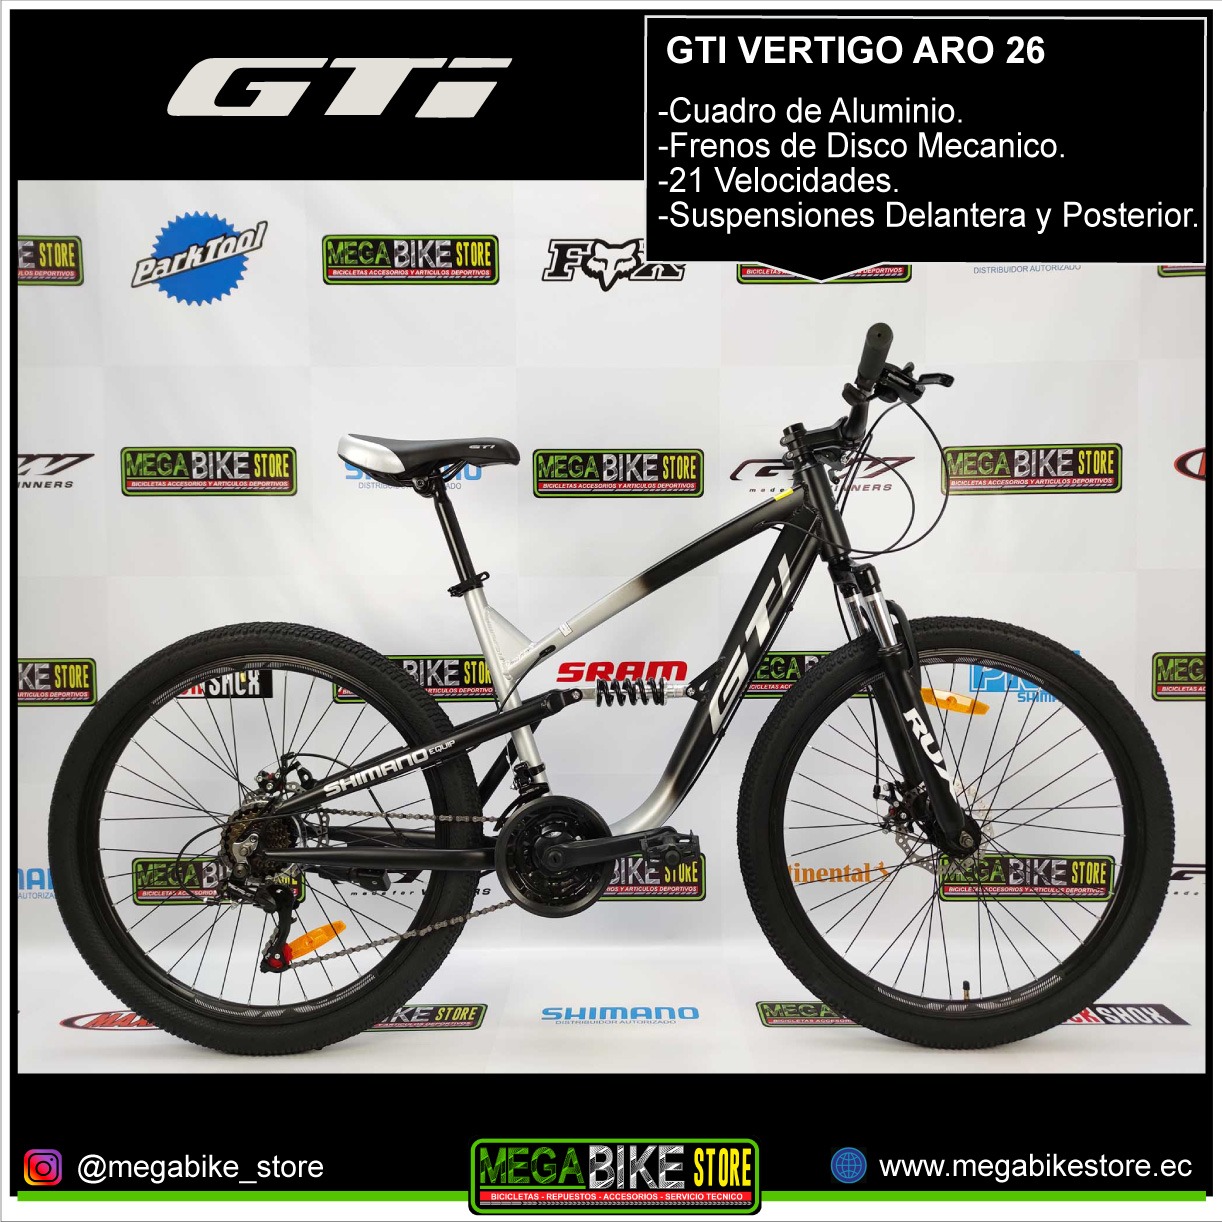 Descifrar Señora Beneficiario gti Bicicleta Montañera GTI VERTIGO Aro 26 Aluminio Doble Suspensión